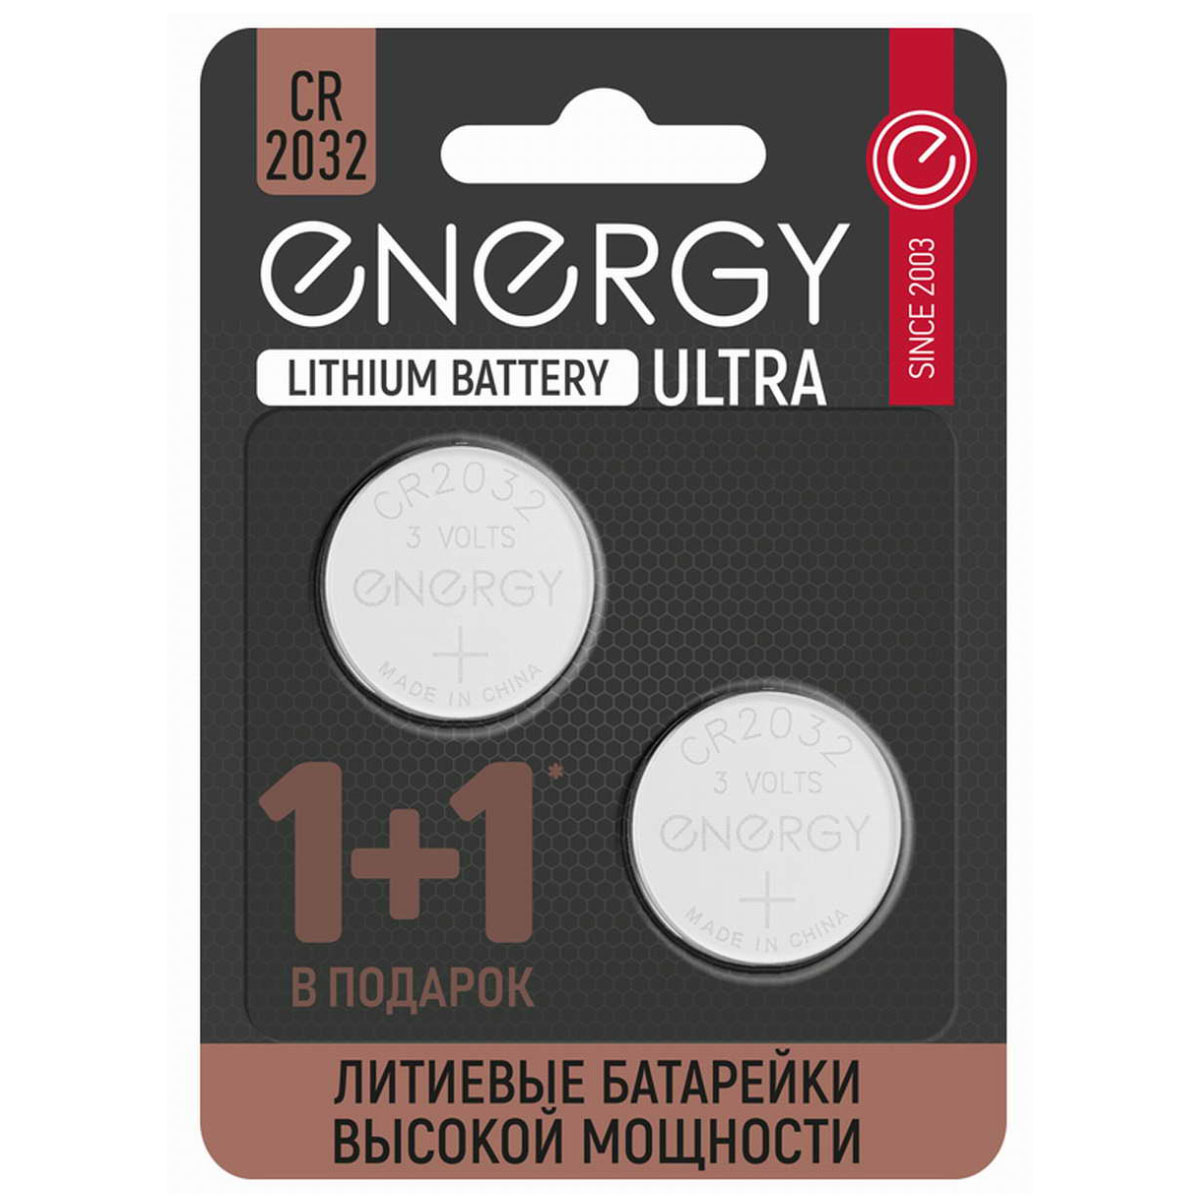 Батарейка ENERGY ULTRA CR2032 BL2 Lithium 3V